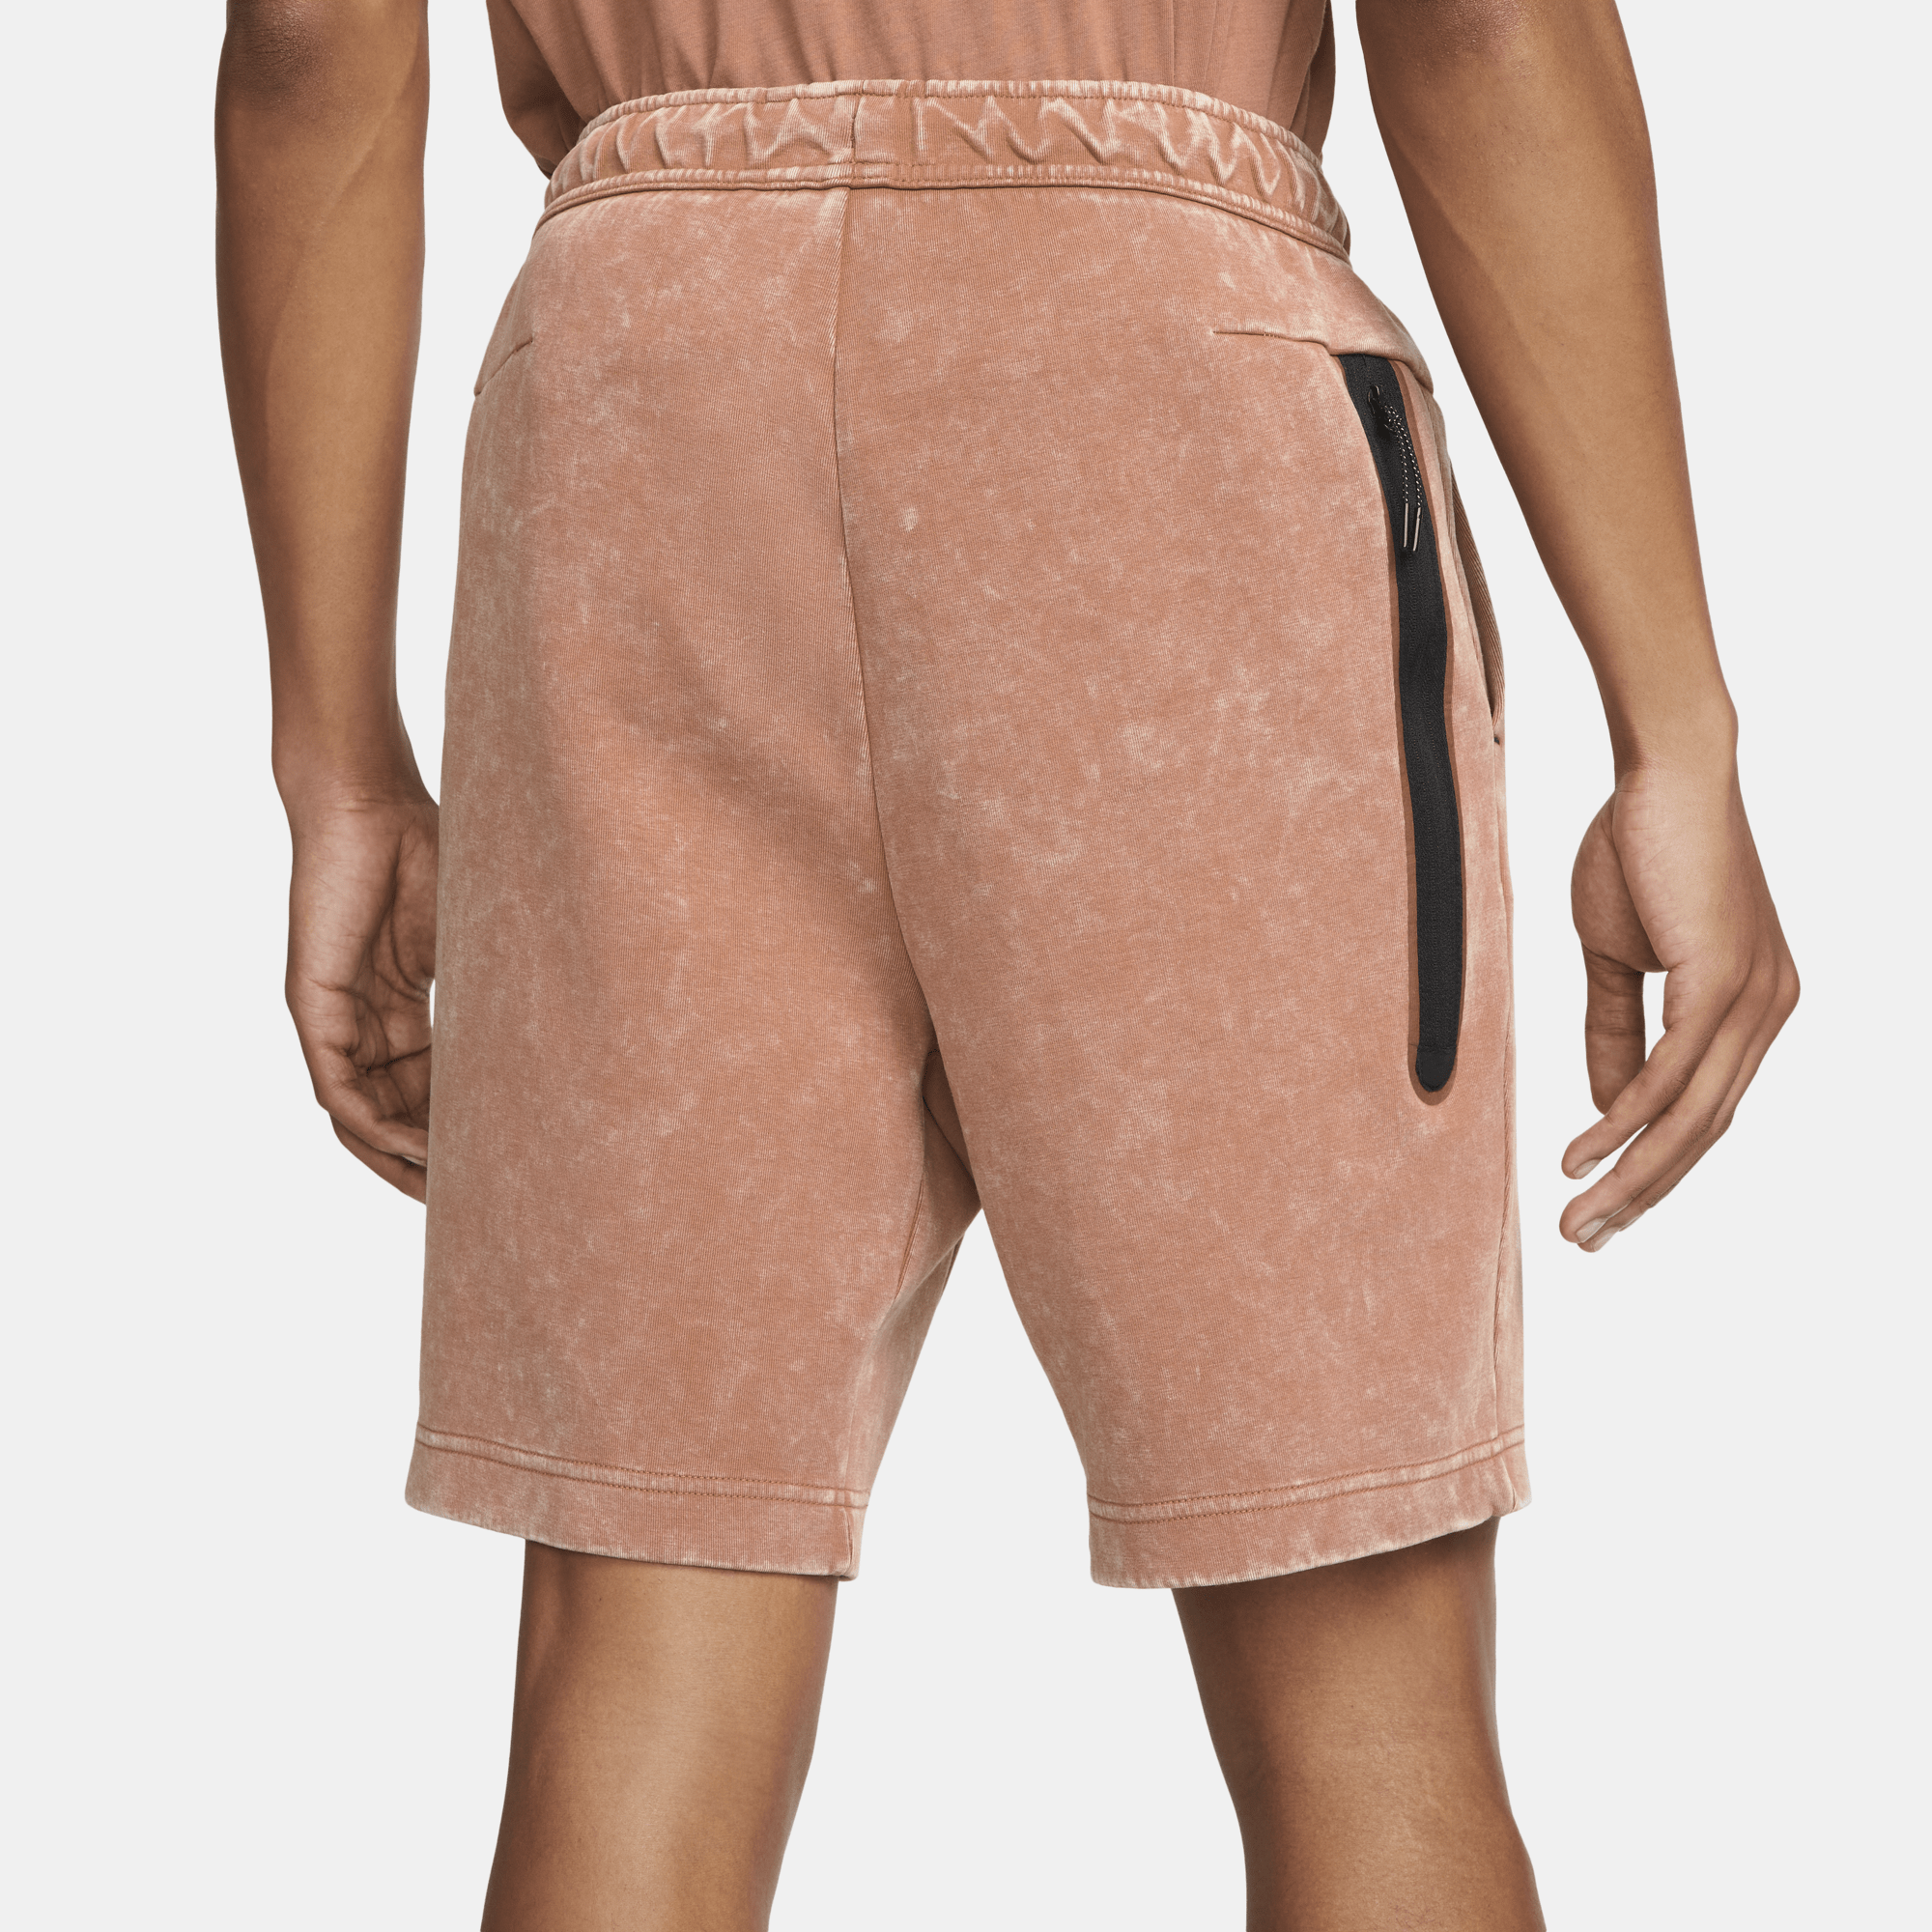 Nike APPAREL Nike Sportswear Tech Fleece Wash Shorts - Men's